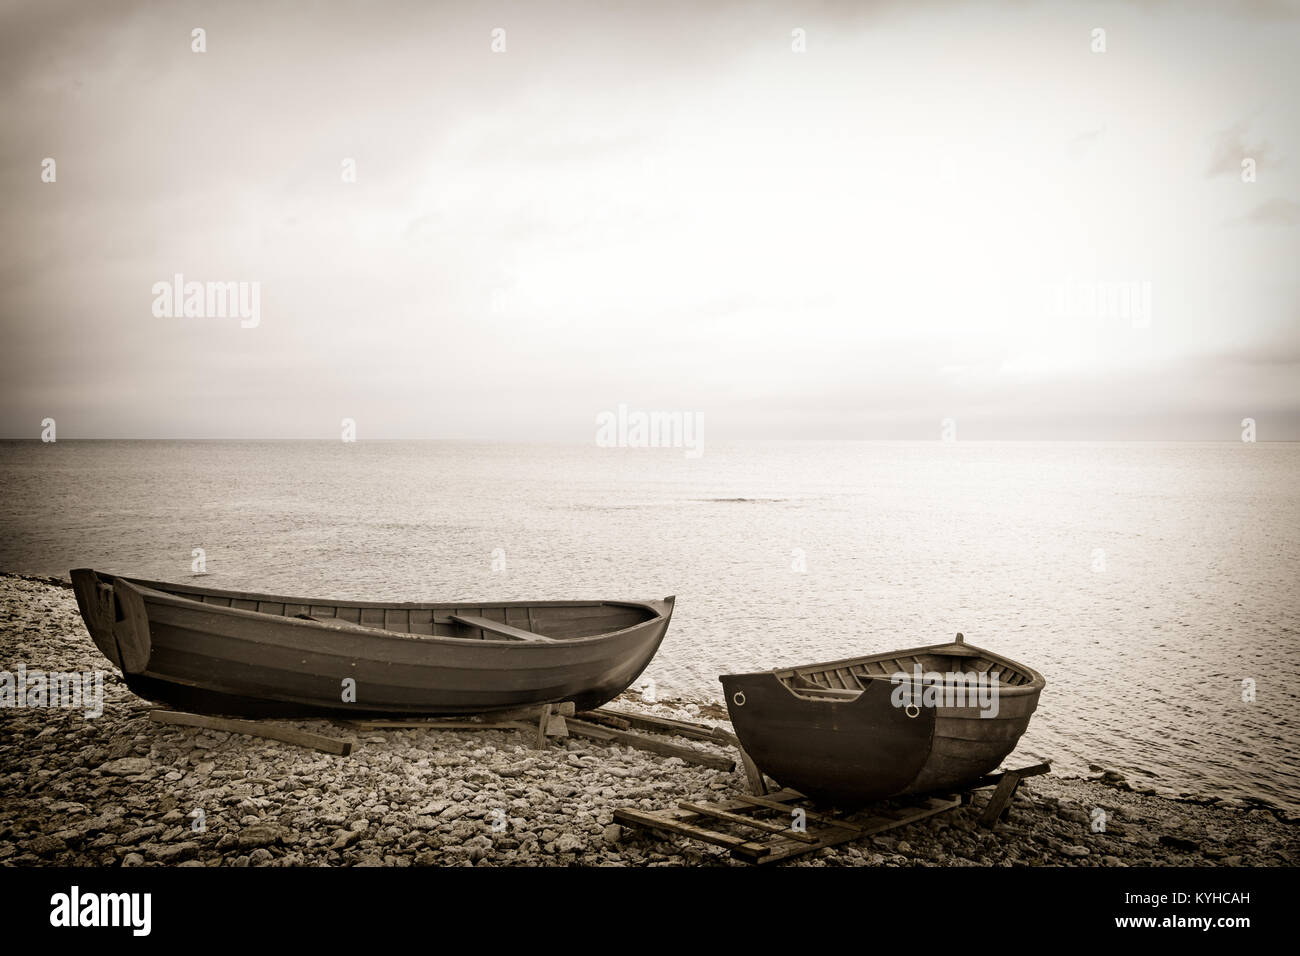 Dos botes de remos de madera en una playa rocosa al borde del mar. Imagen en tonos sepia moody de ensueño. Copie el espacio. Ubicación: Isla Faro, Suecia Foto de stock